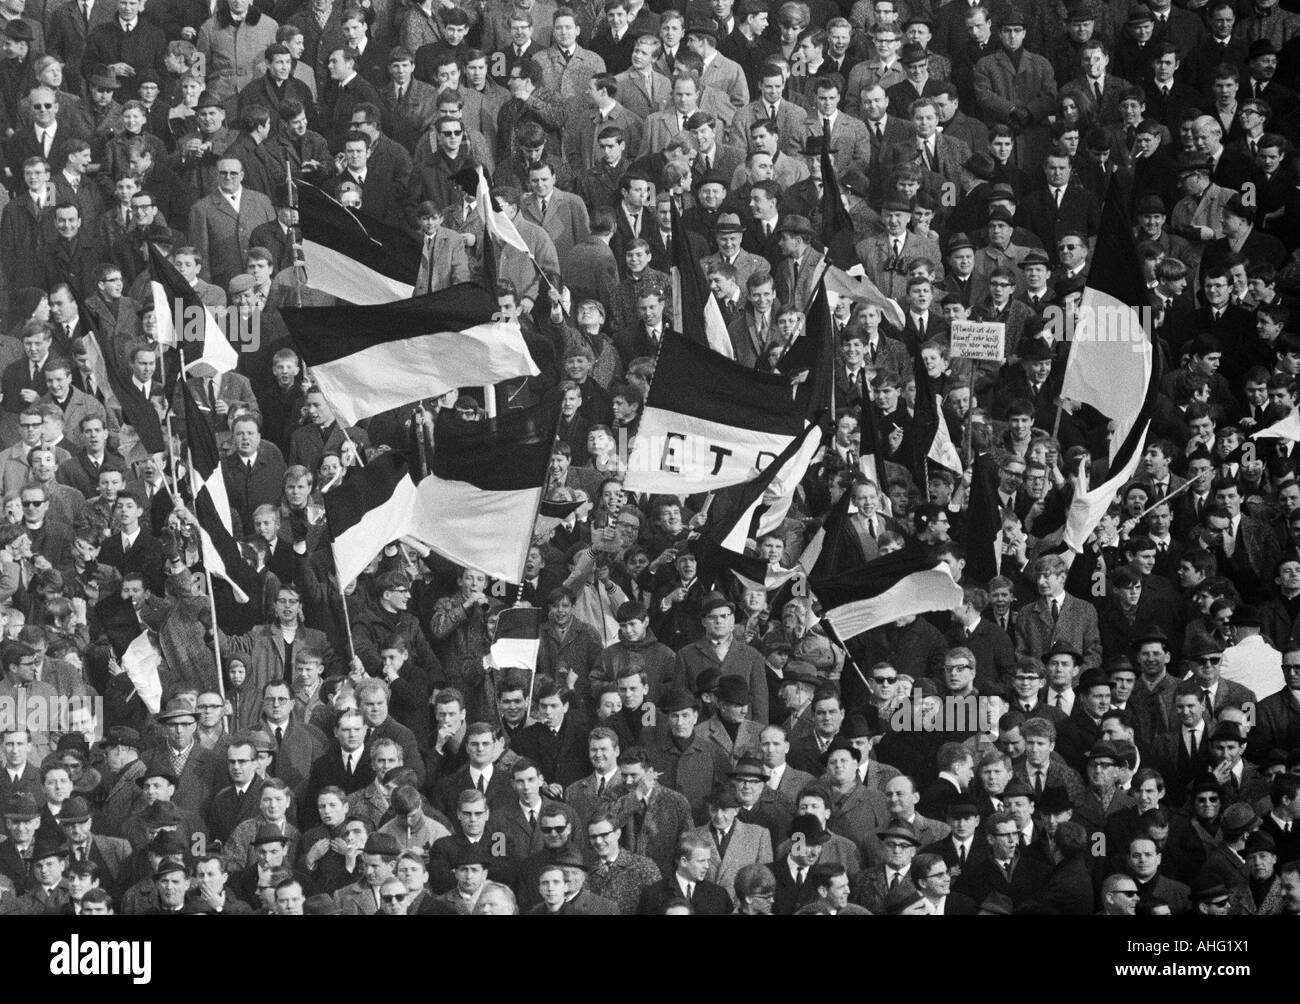 football, Regionalliga West, 1966/1967, ETB Schwarz-Weiss Essen versus Arminia Bielefeld 2:0, Stadium am Uhlenkrug in Essen, crowd of spectators, Essen football fans waving their club flags Stock Photo